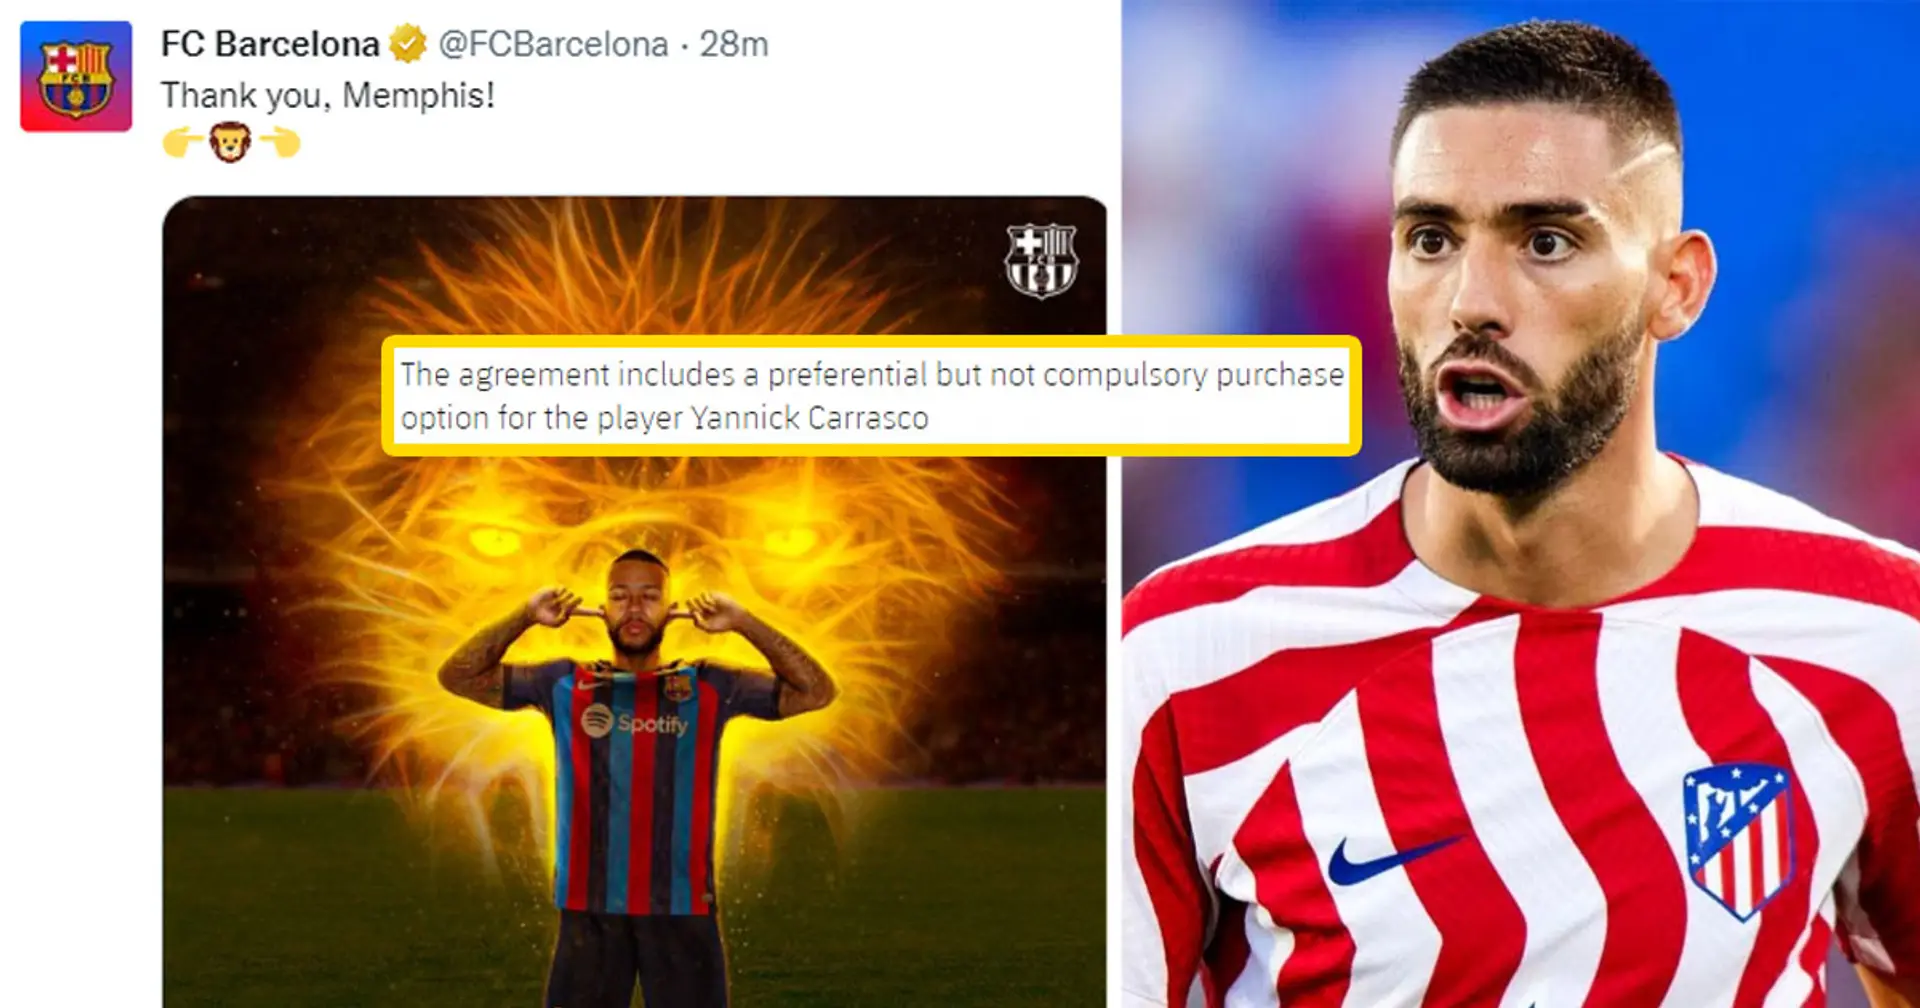 Le Barça confirme "l'option d'achat préférentiel" sur Carrasco dans le cadre du pacte de Memphis